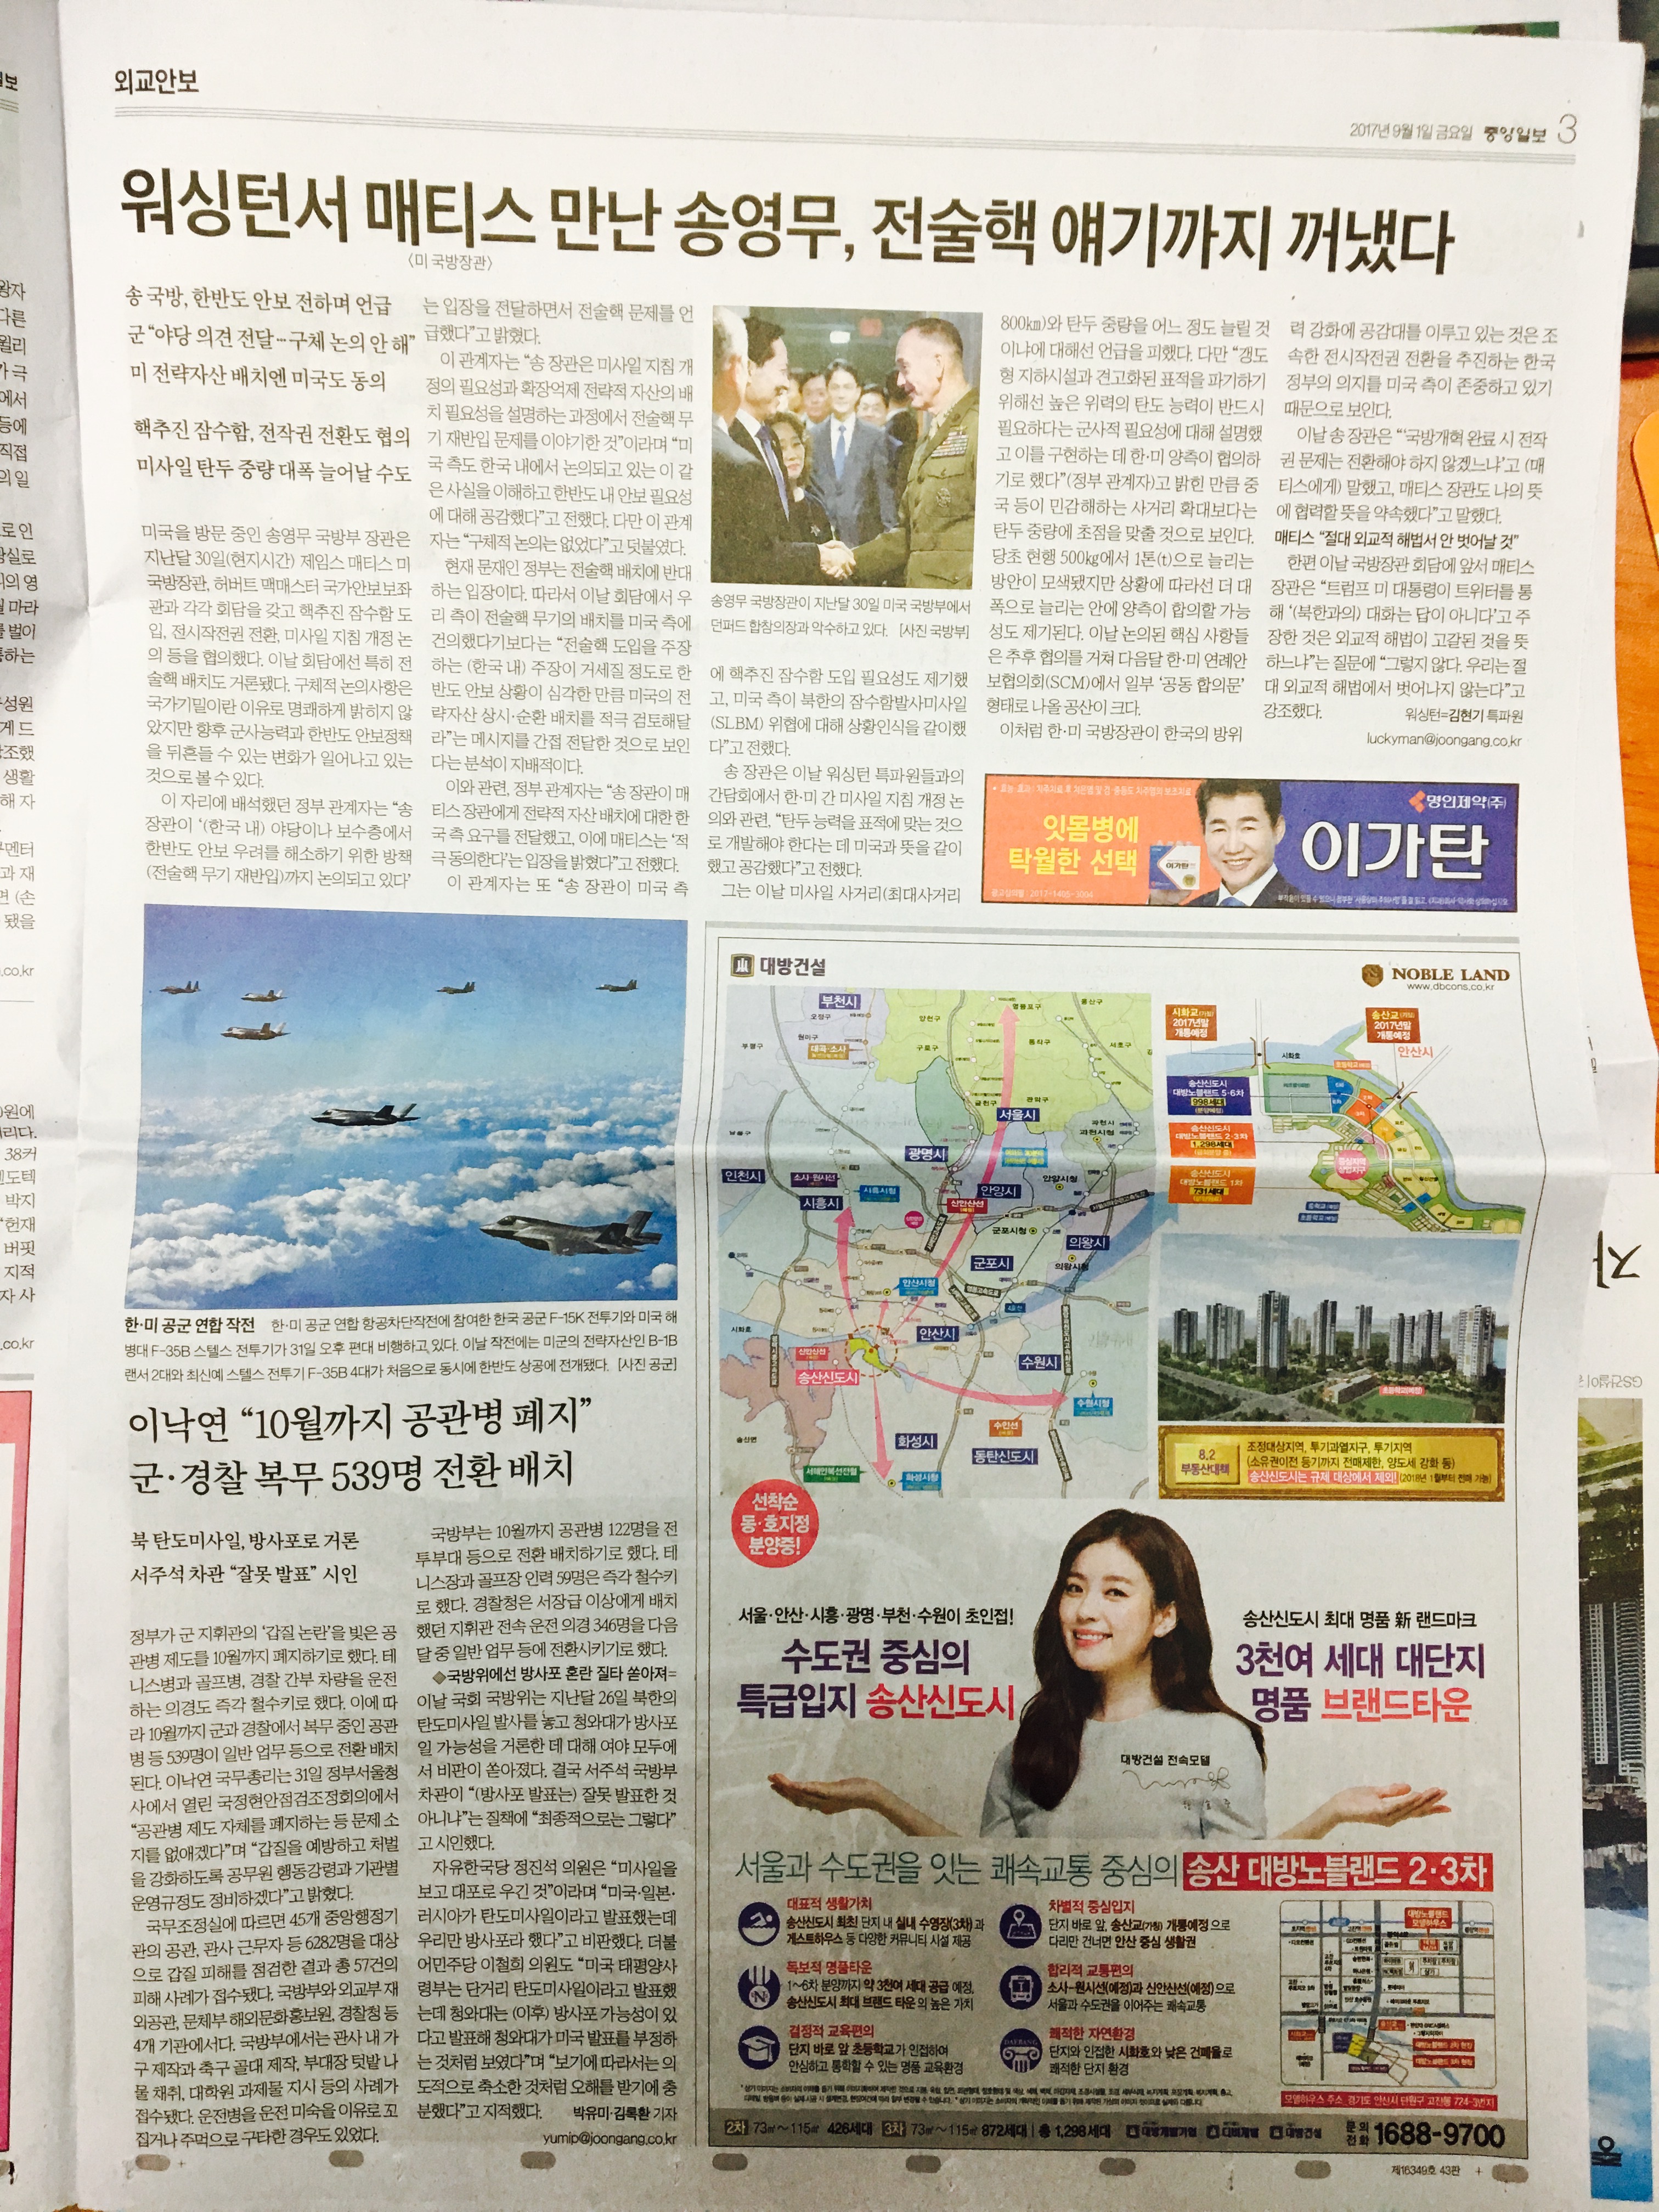 9월 1일 중앙일보 3 송산 신도시 대방노블랜드 2,3차.jpg